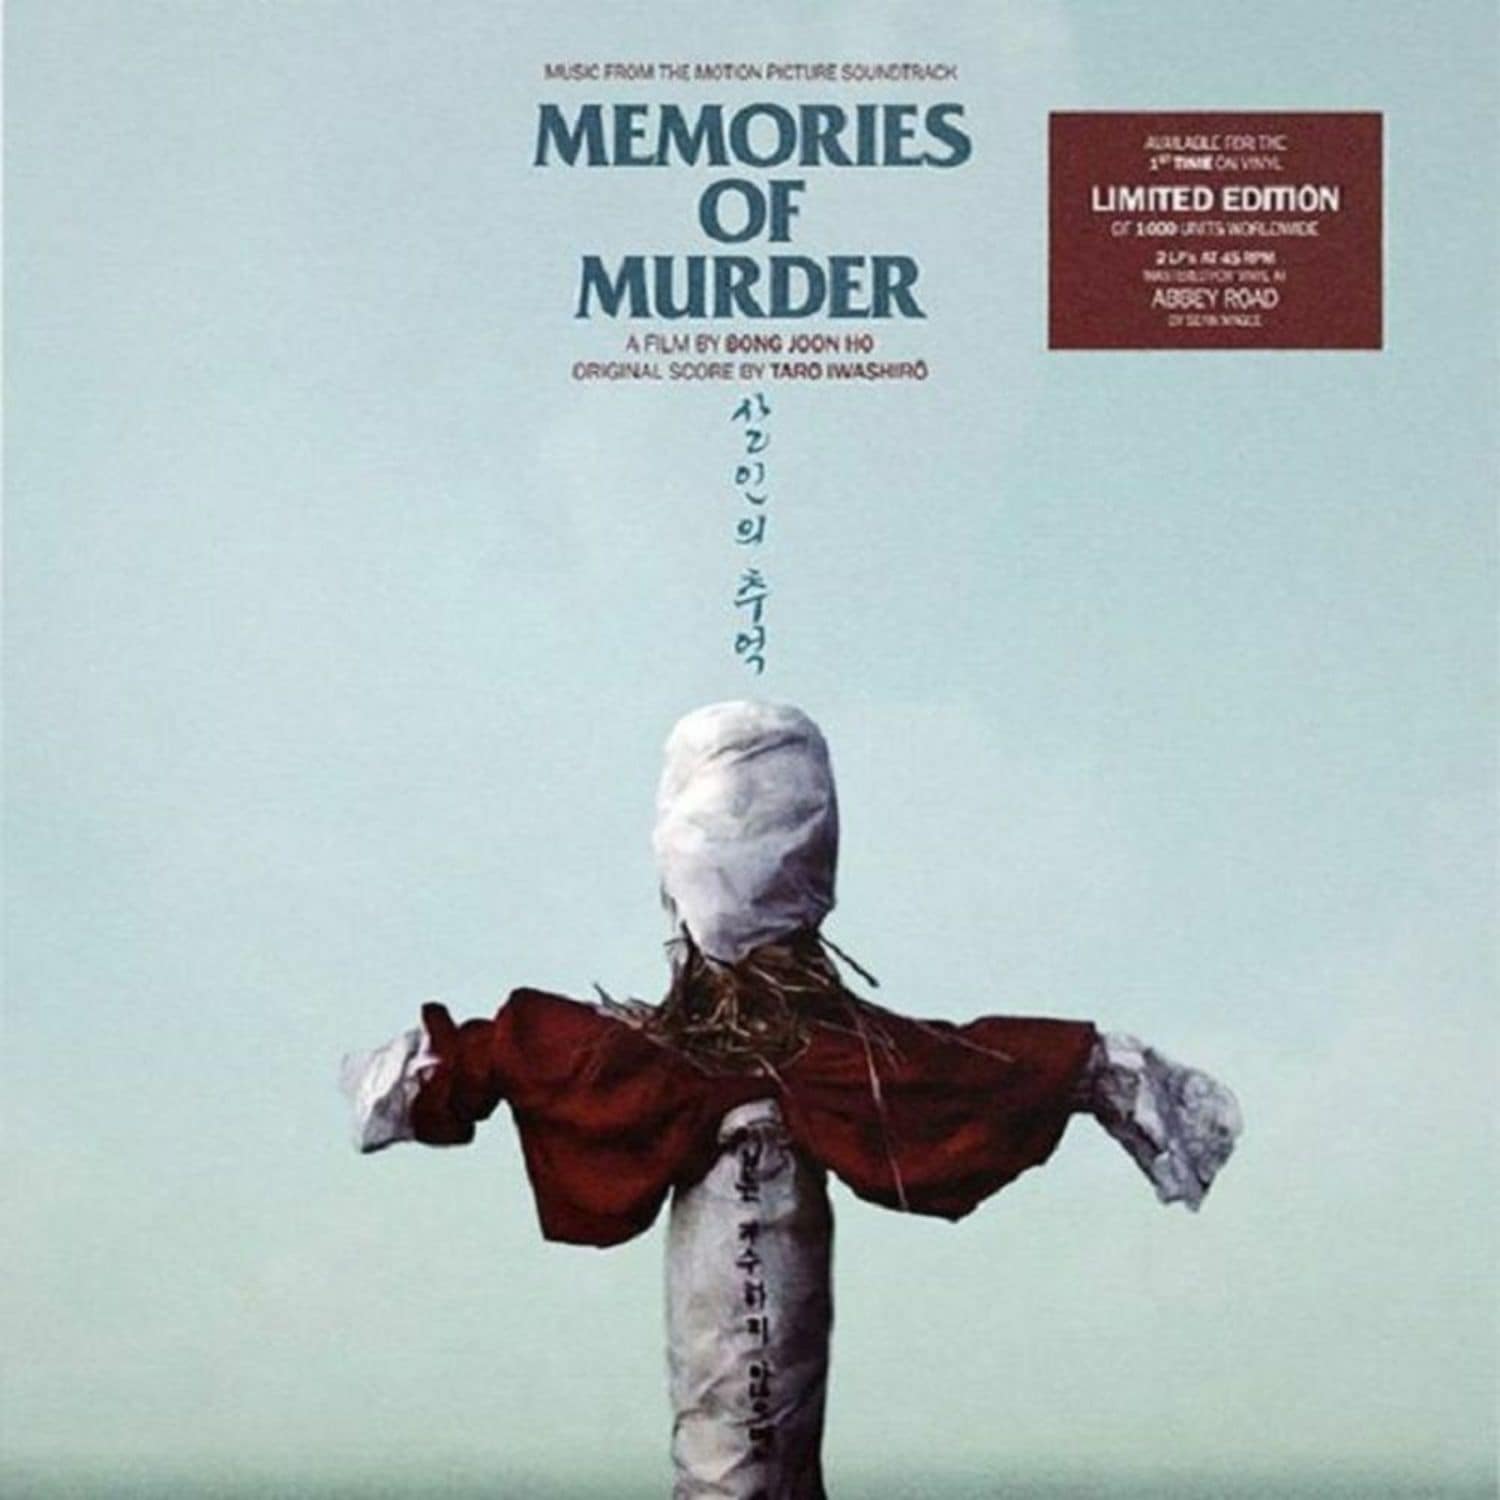 Taro Iwashiro - MEMORIES OF MURDER 